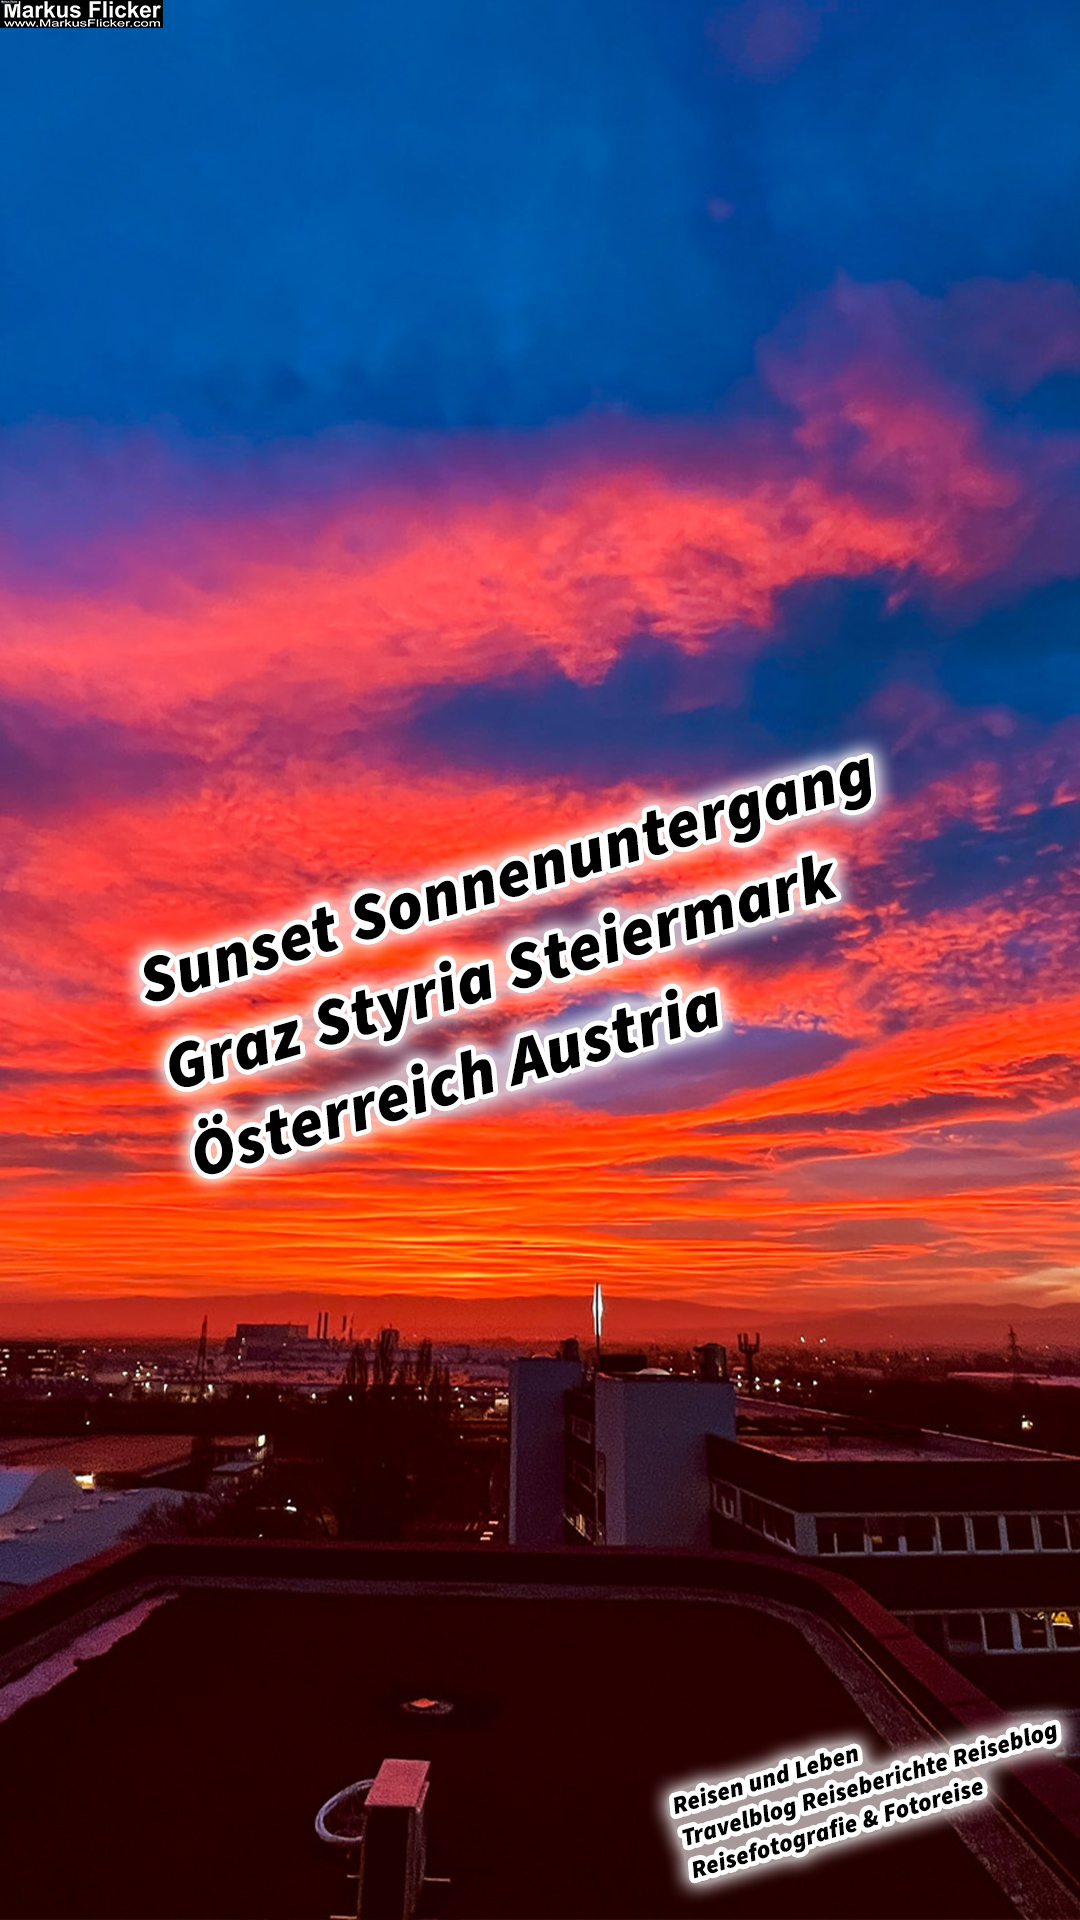 Sunset Sonnenuntergang Graz Styria Steiermark Österreich Austria